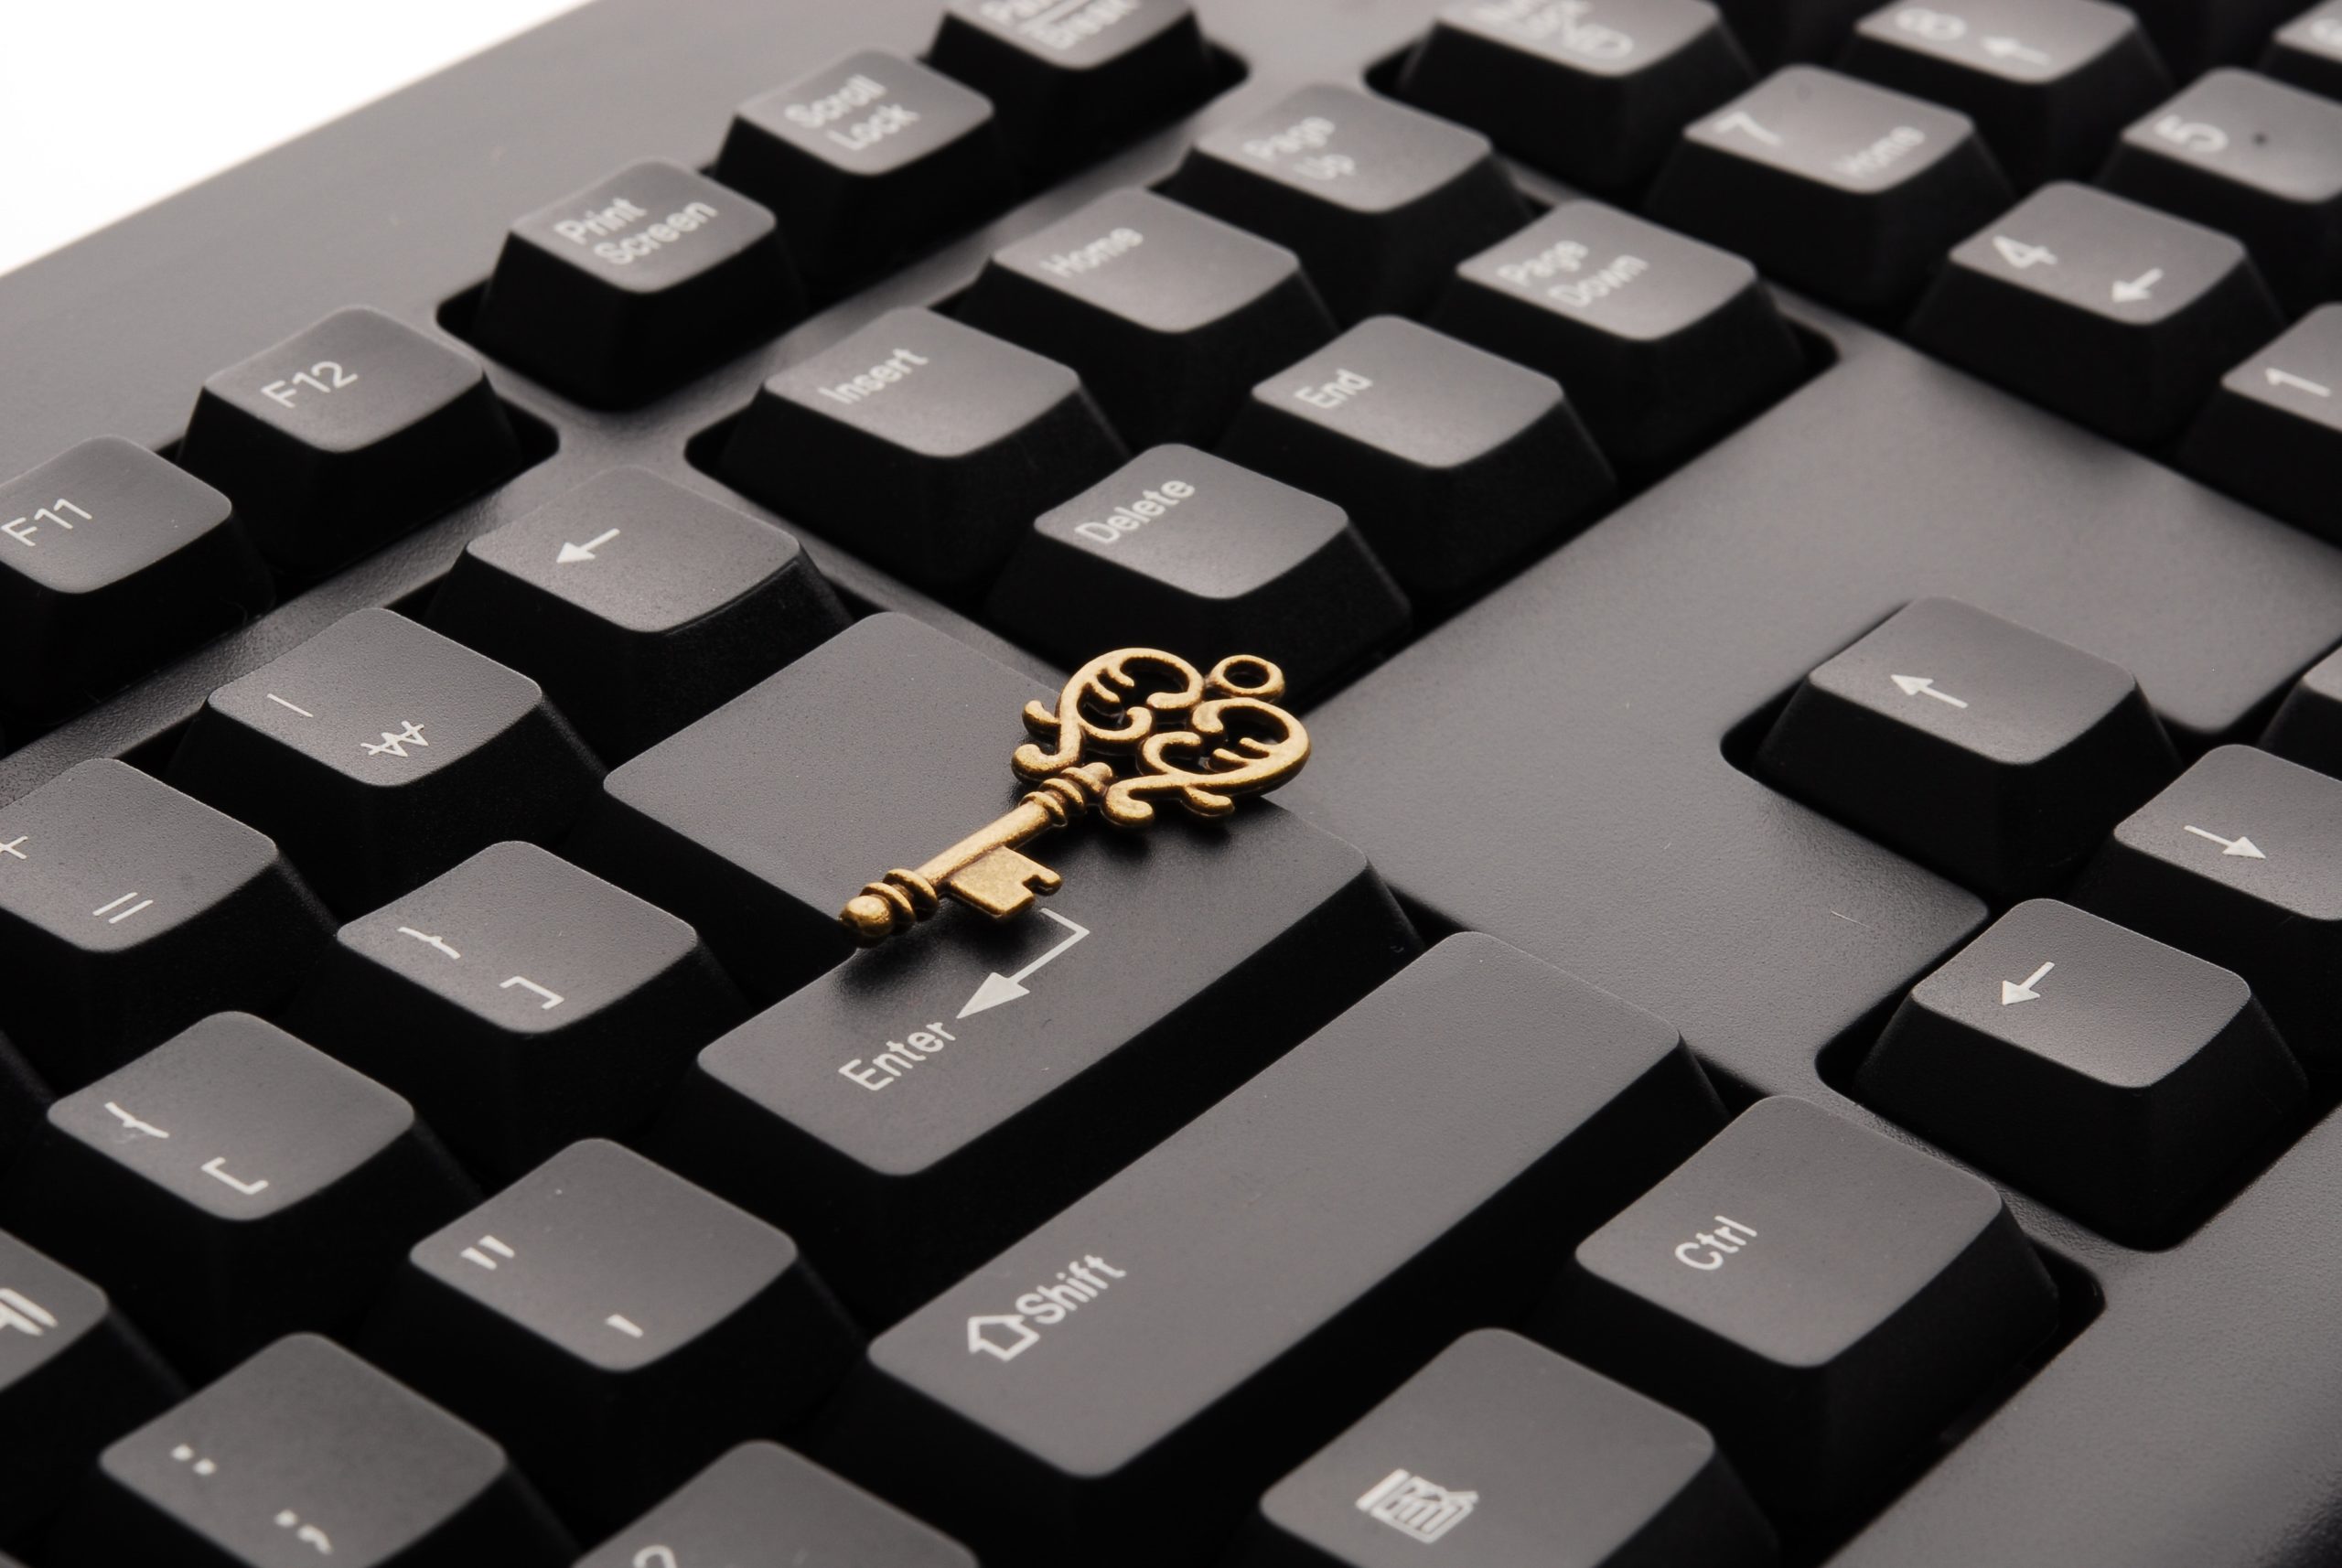 A golden key lies on a black computer keyboard.